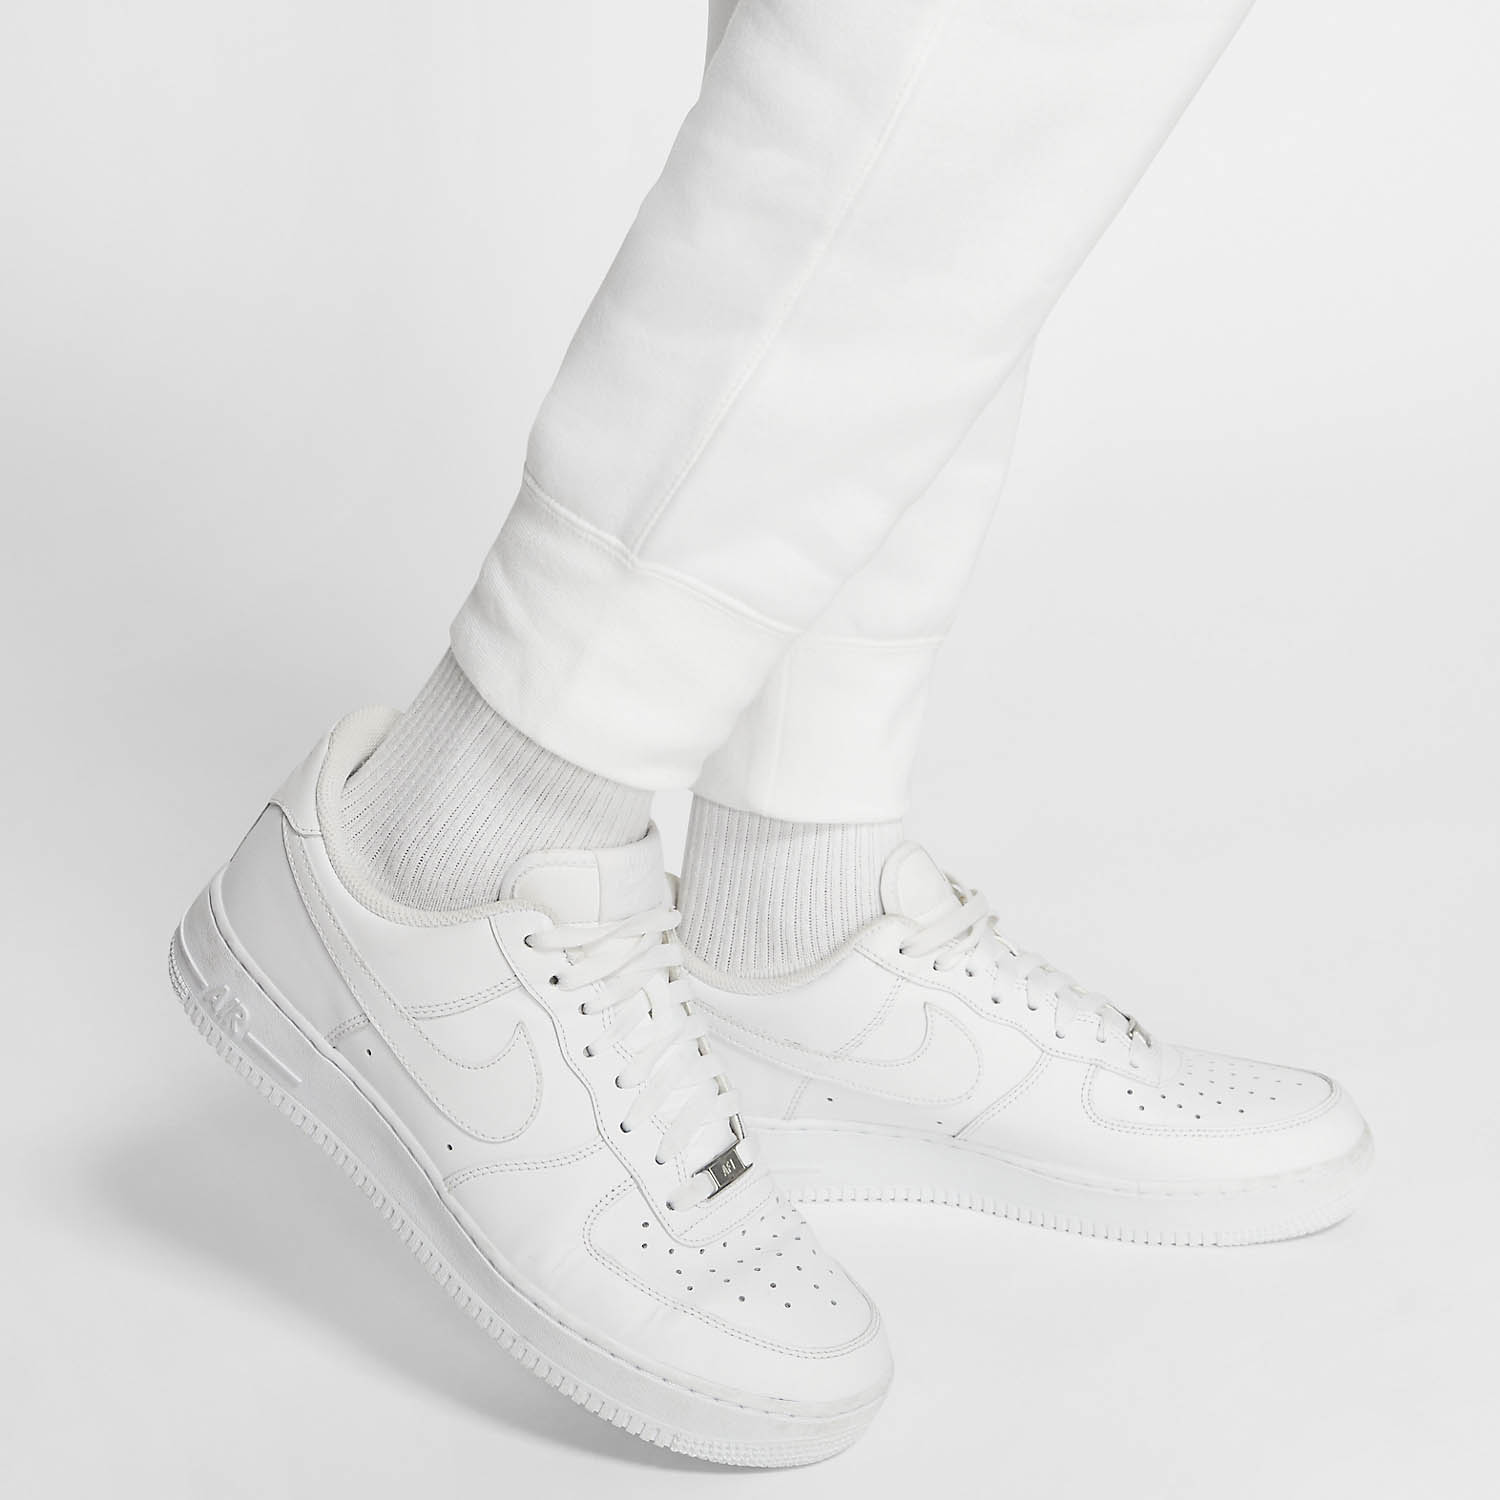 Nike Sportswear Club Pantaloni - White/Black